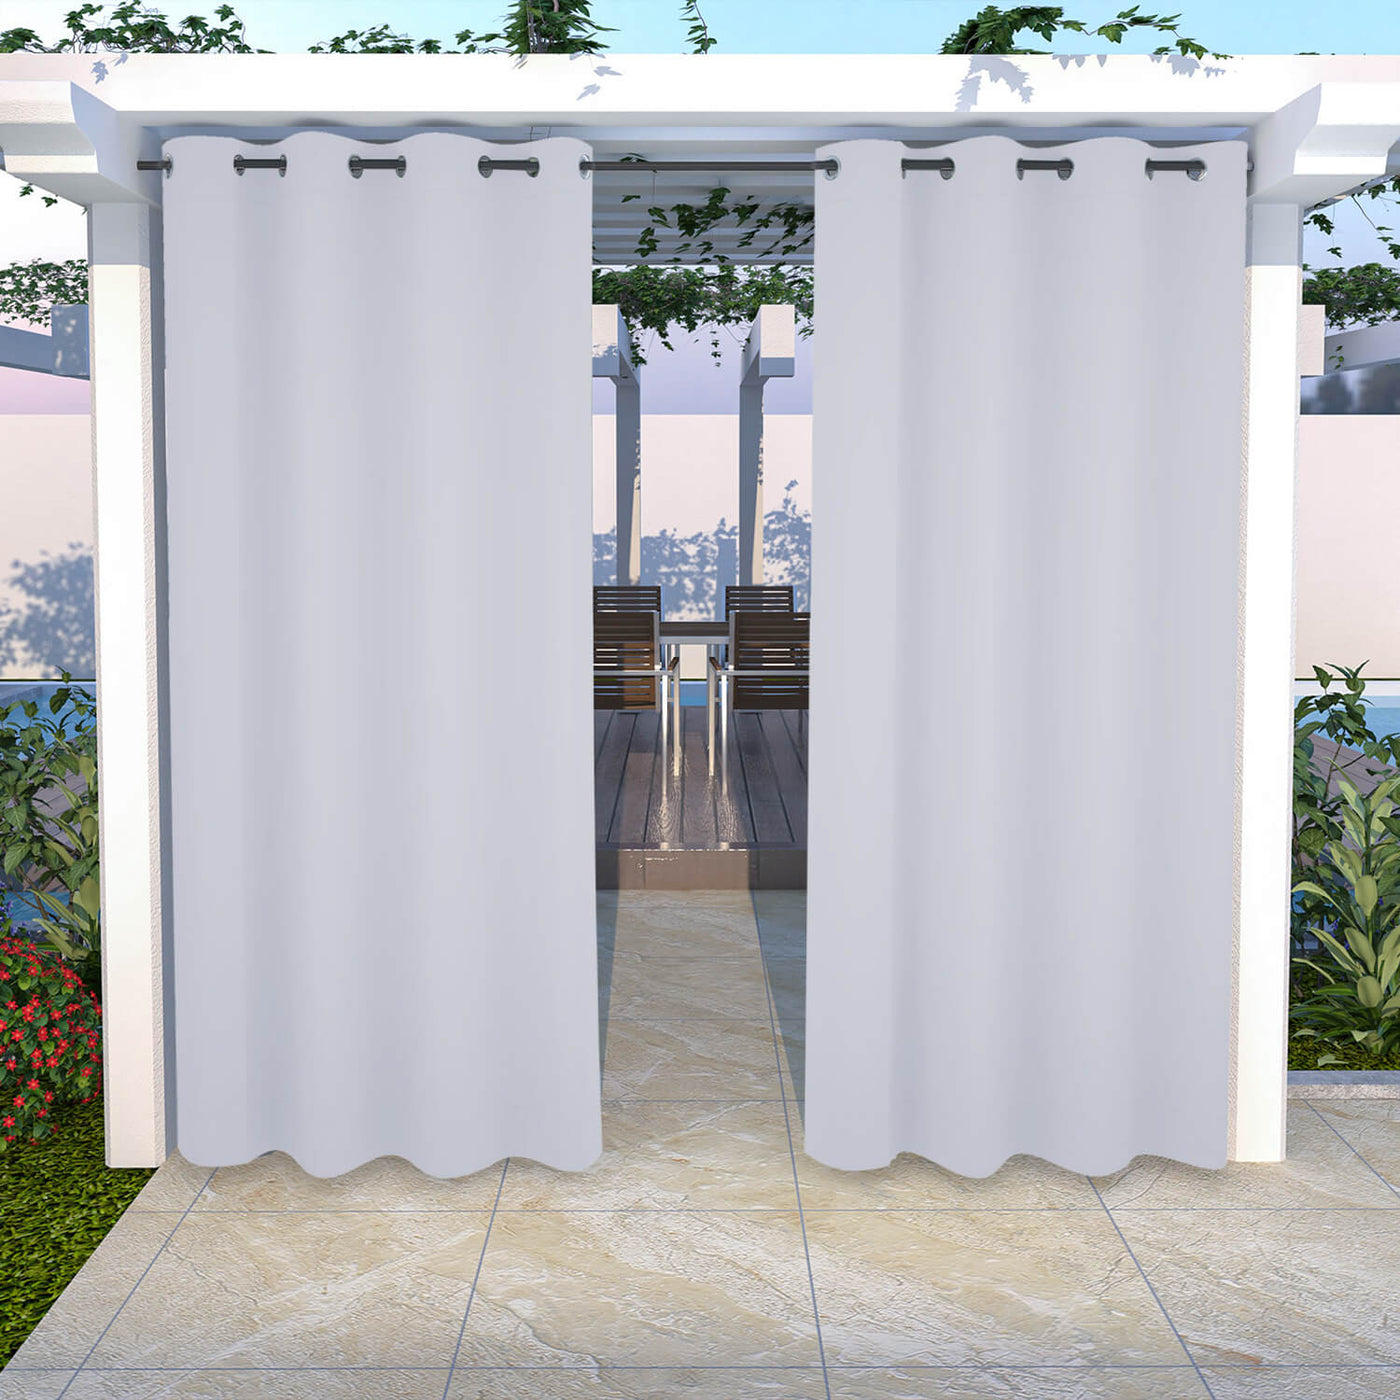 Outdoor Curtains Waterproof Grommet Top 1 Panel